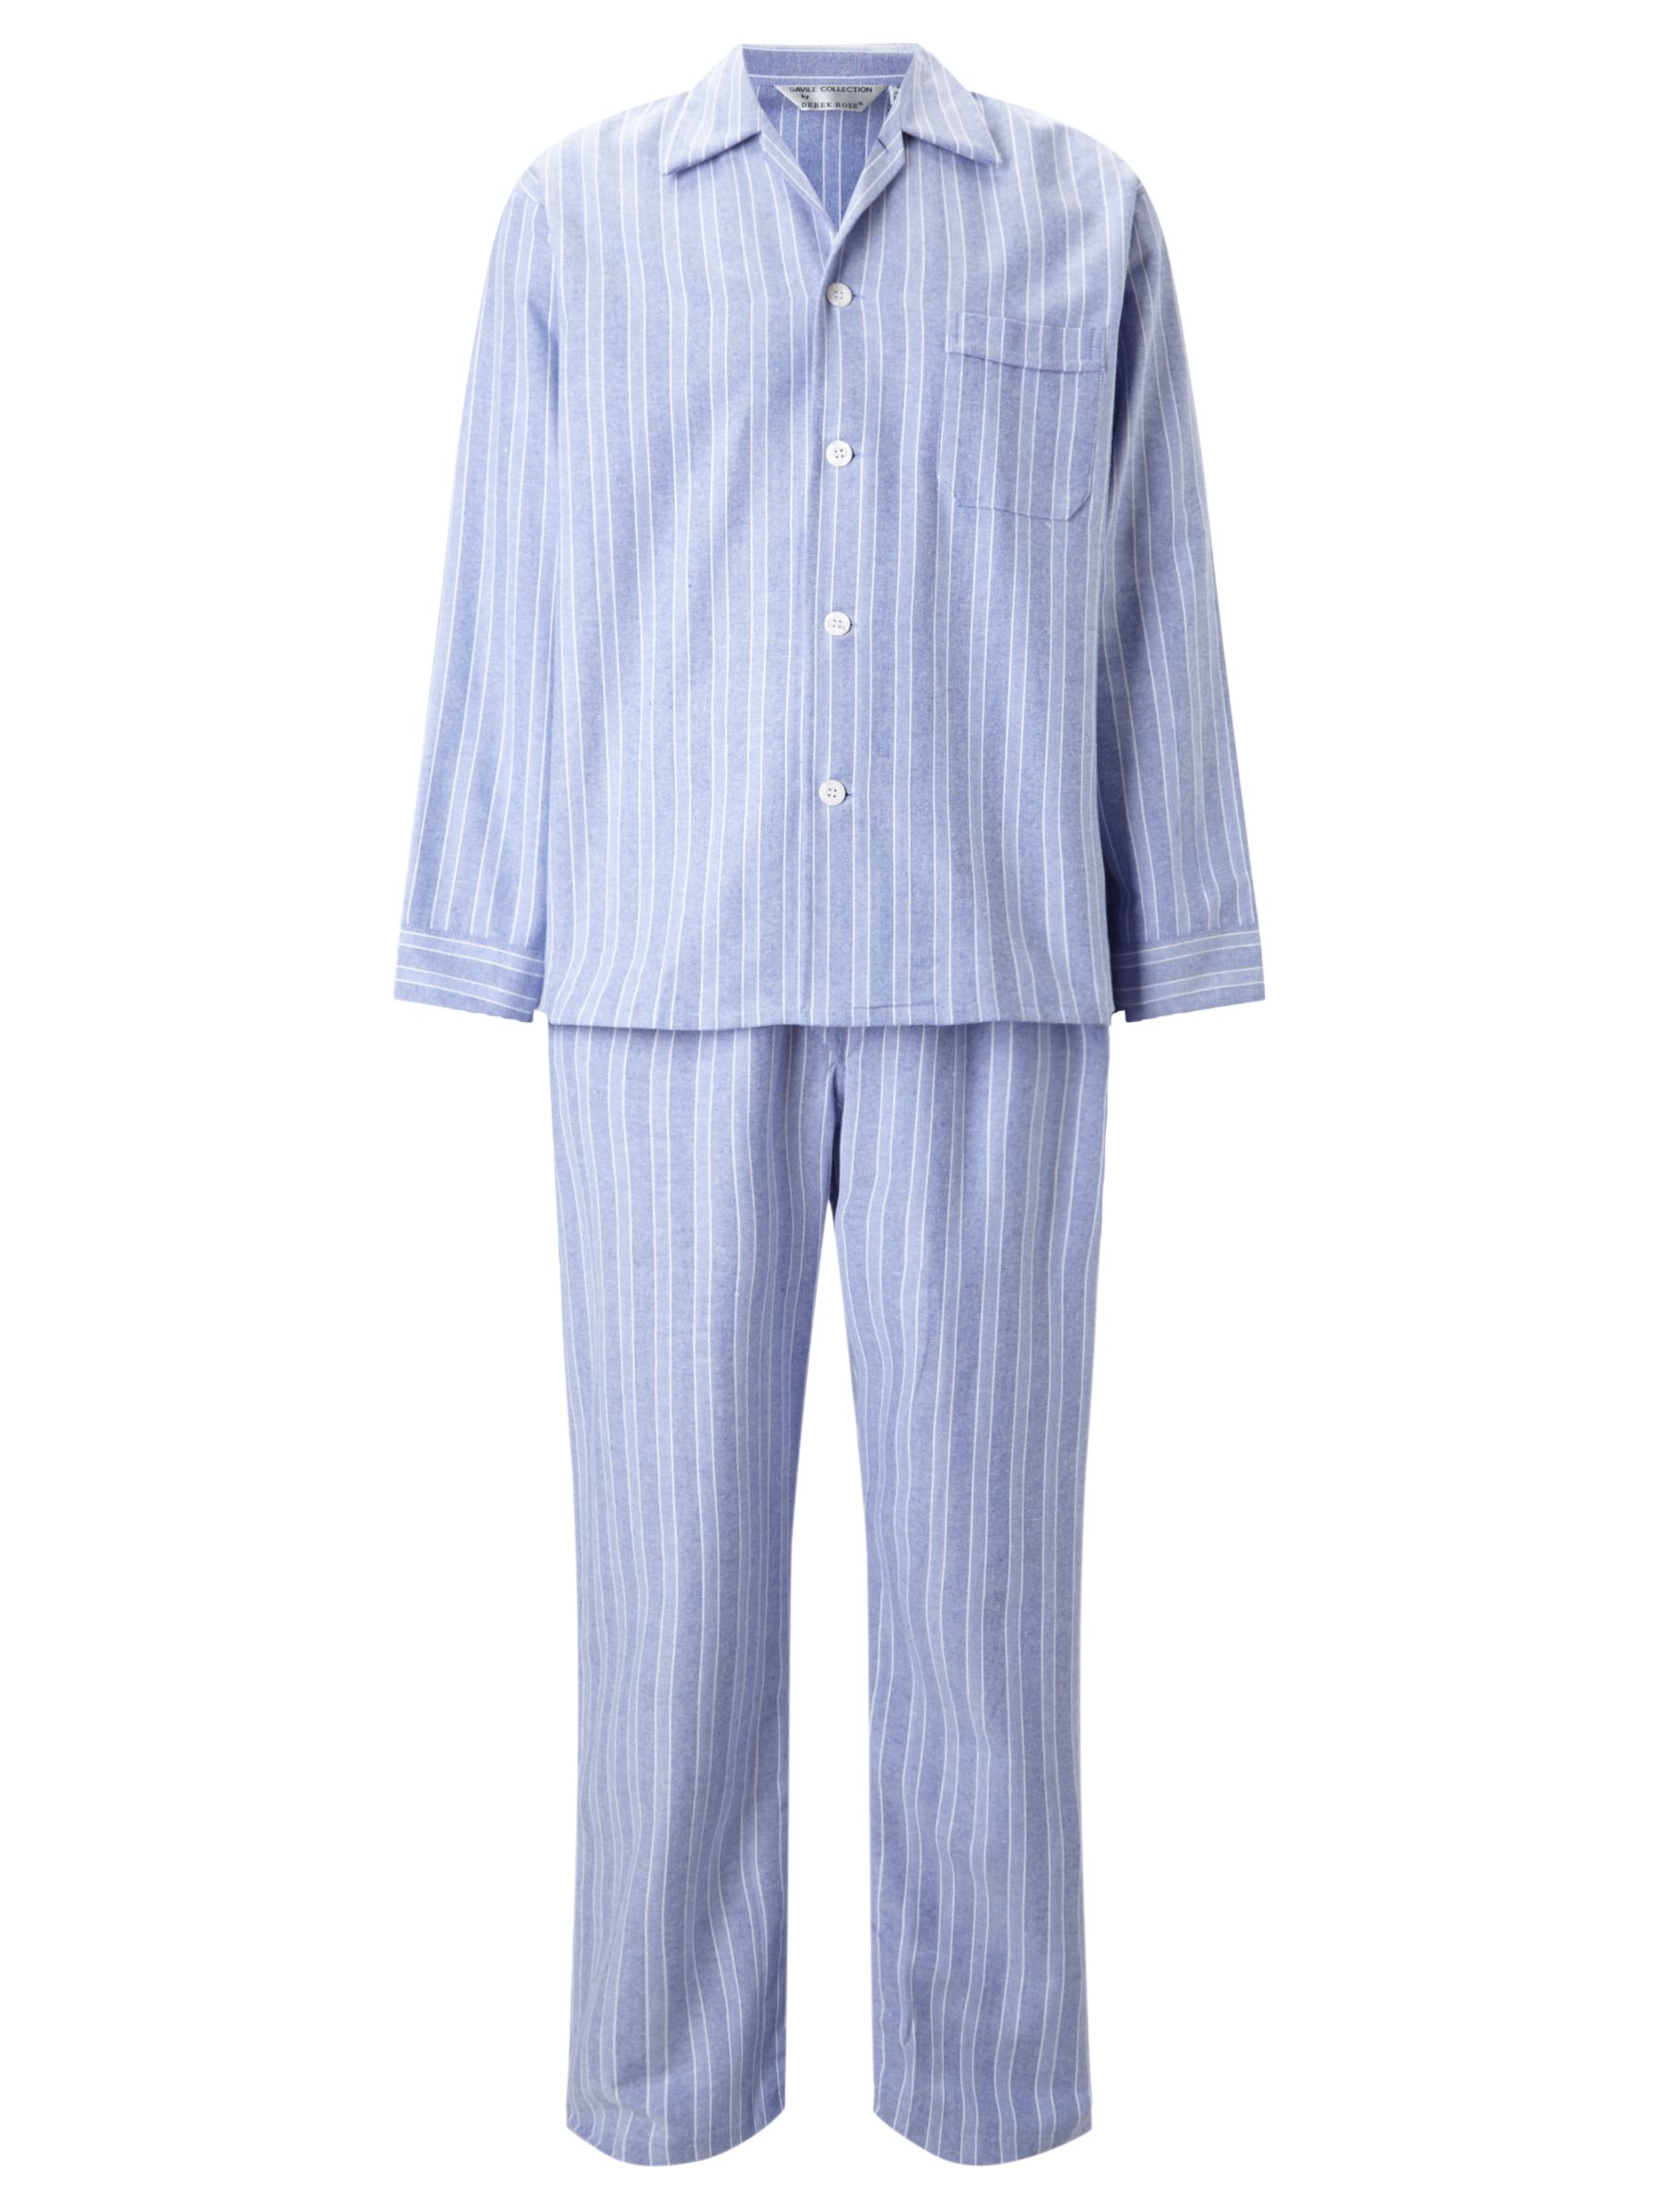 Derek Rose Brushed Cotton Stripe Pyjamas, White/Blue at John Lewis ...